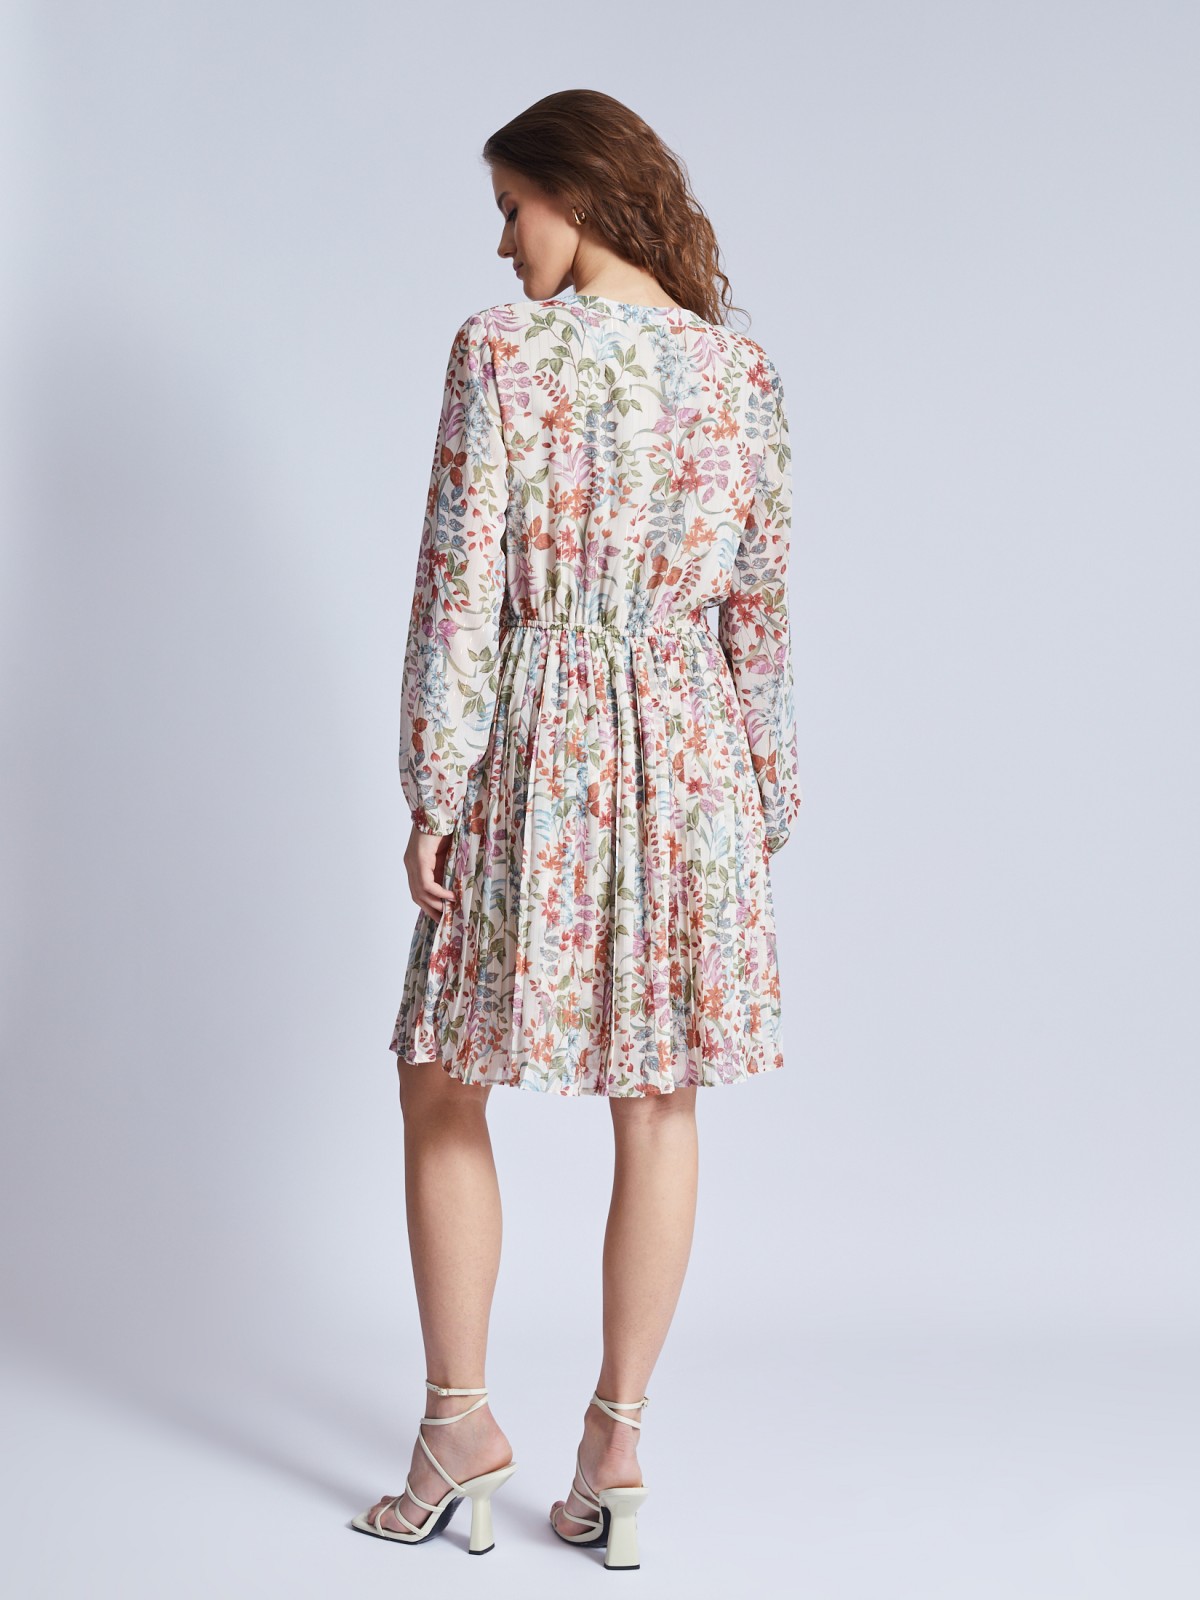 Шифоновое платье с плиссировкой на подоле, люрексом и цветочным принтом